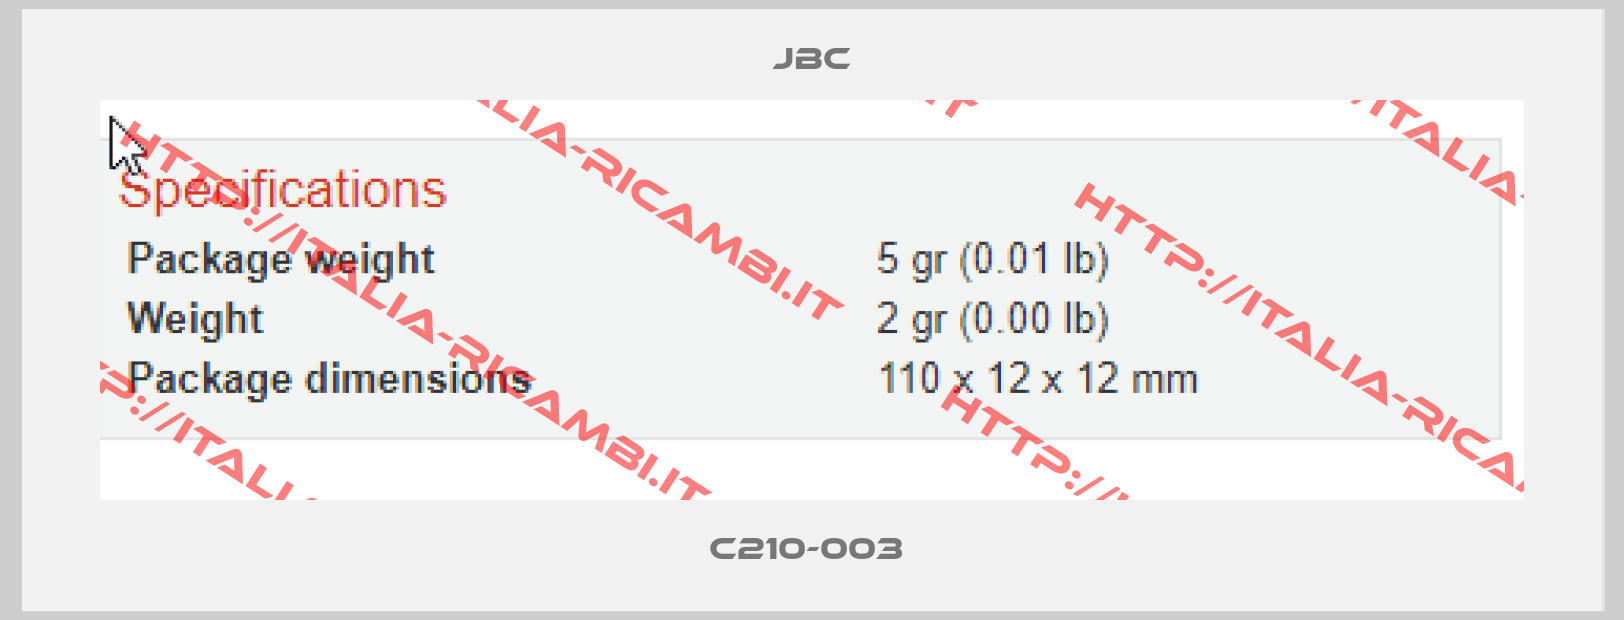 JBC-C210-003 